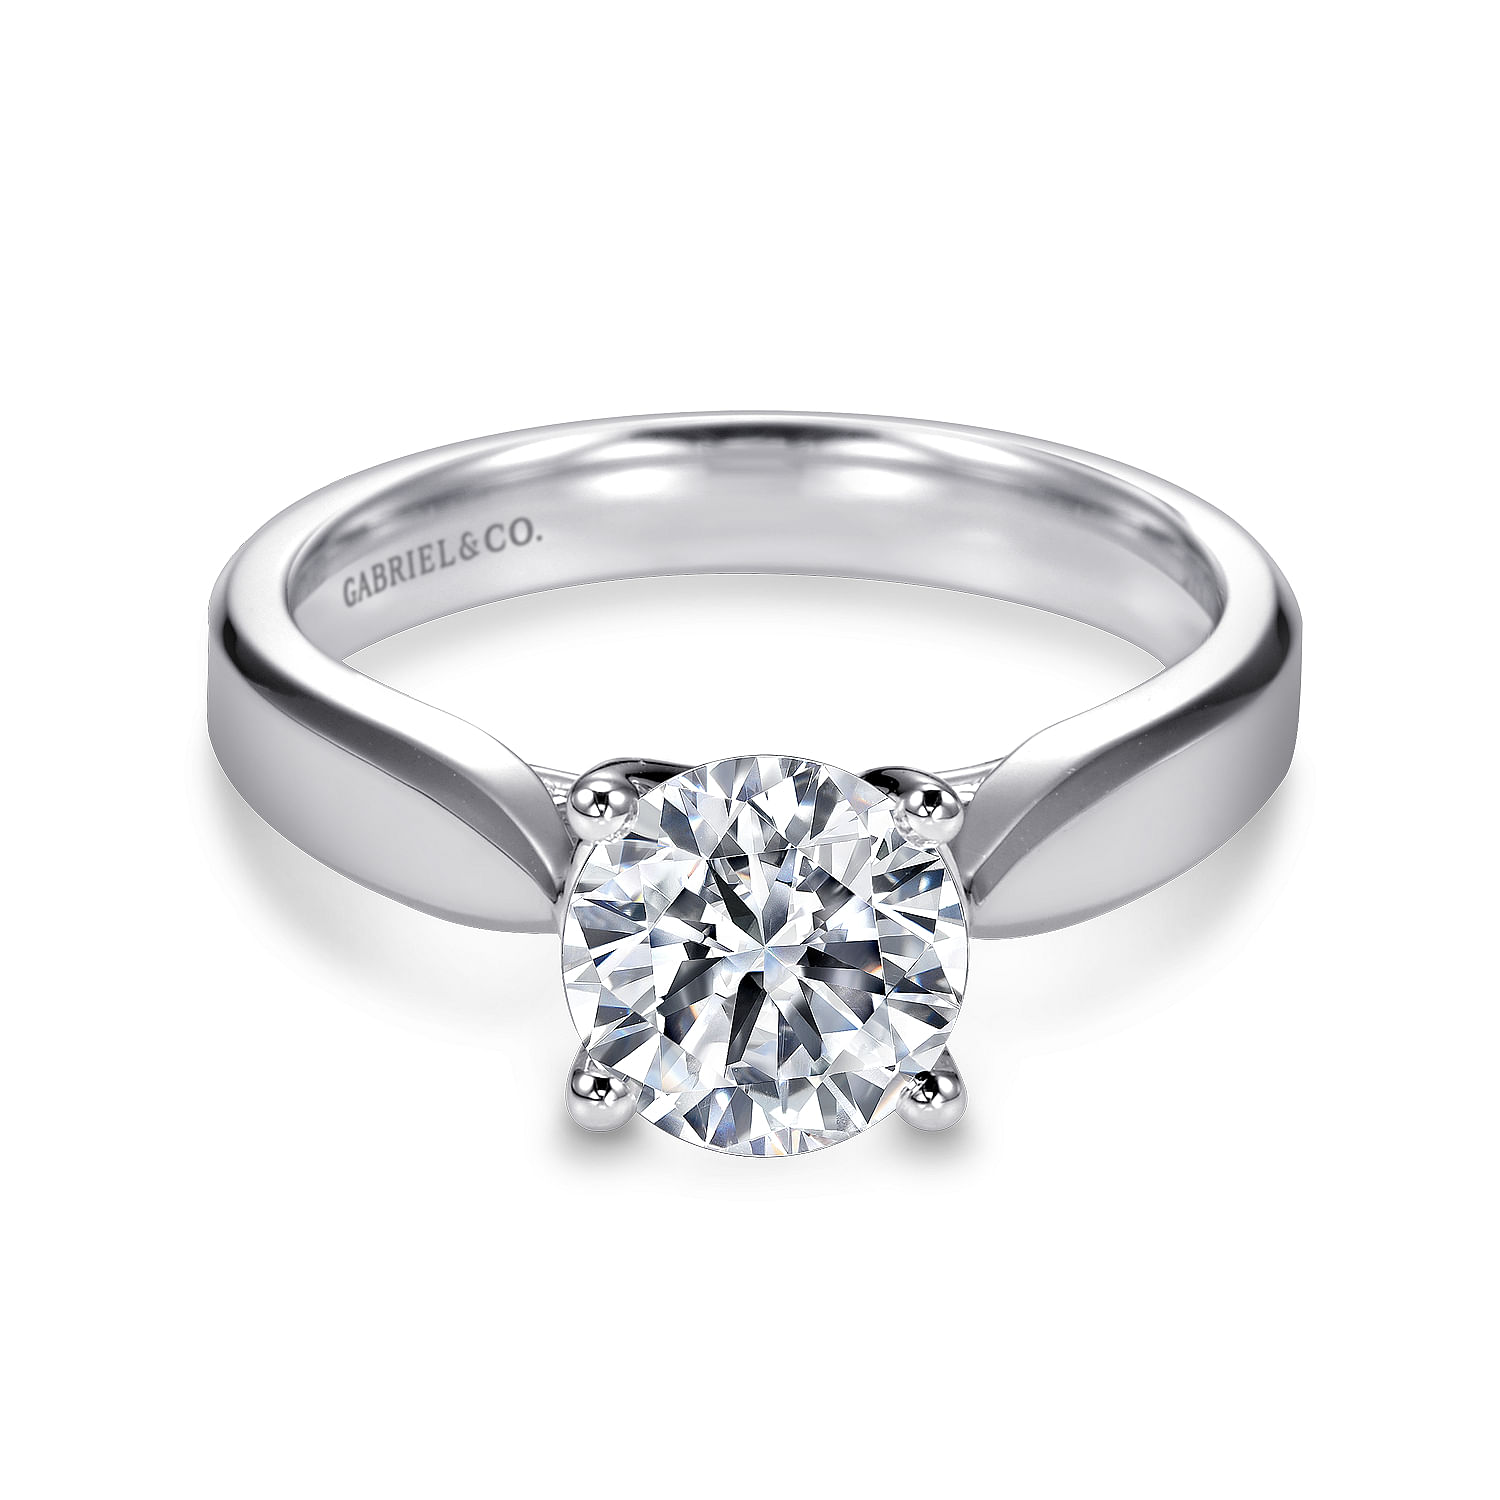 Jamie---14K-White-Gold-Round-Diamond-Engagement-Ring1